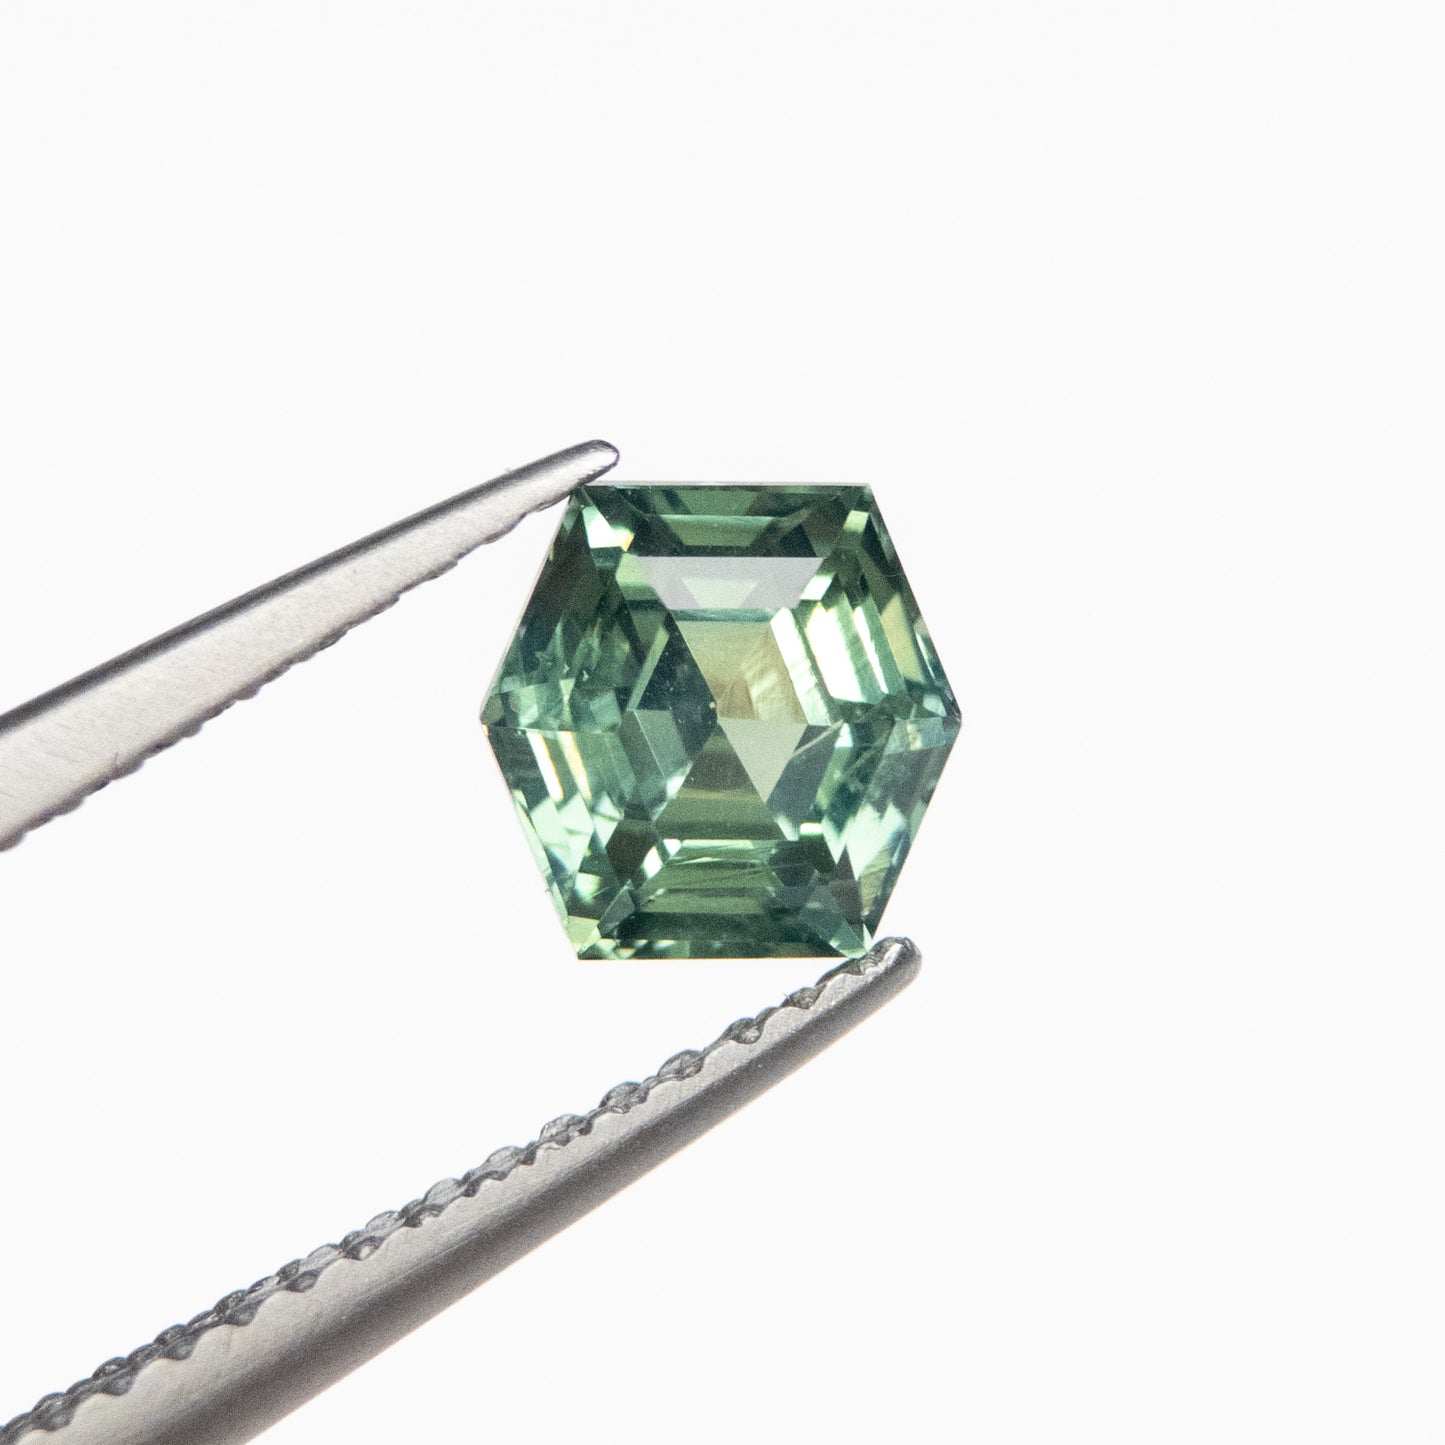 1.20ct 5.97x6.05x4.01mm Green Hexagon Step Cut Sapphire EGEM-52